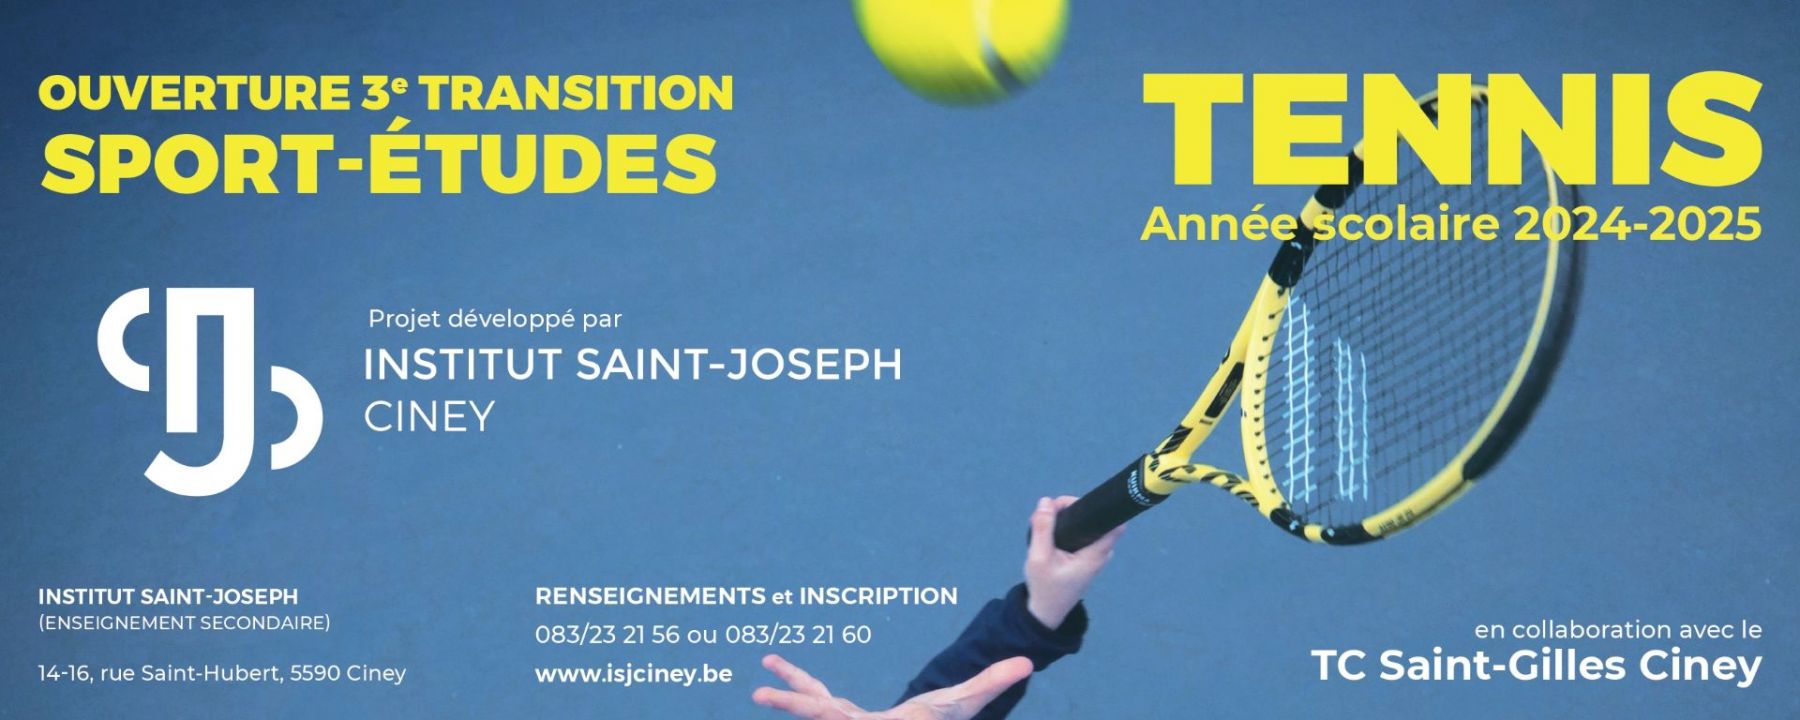 Tennis Bandeau-écran01 24-25_page-0001.jpg